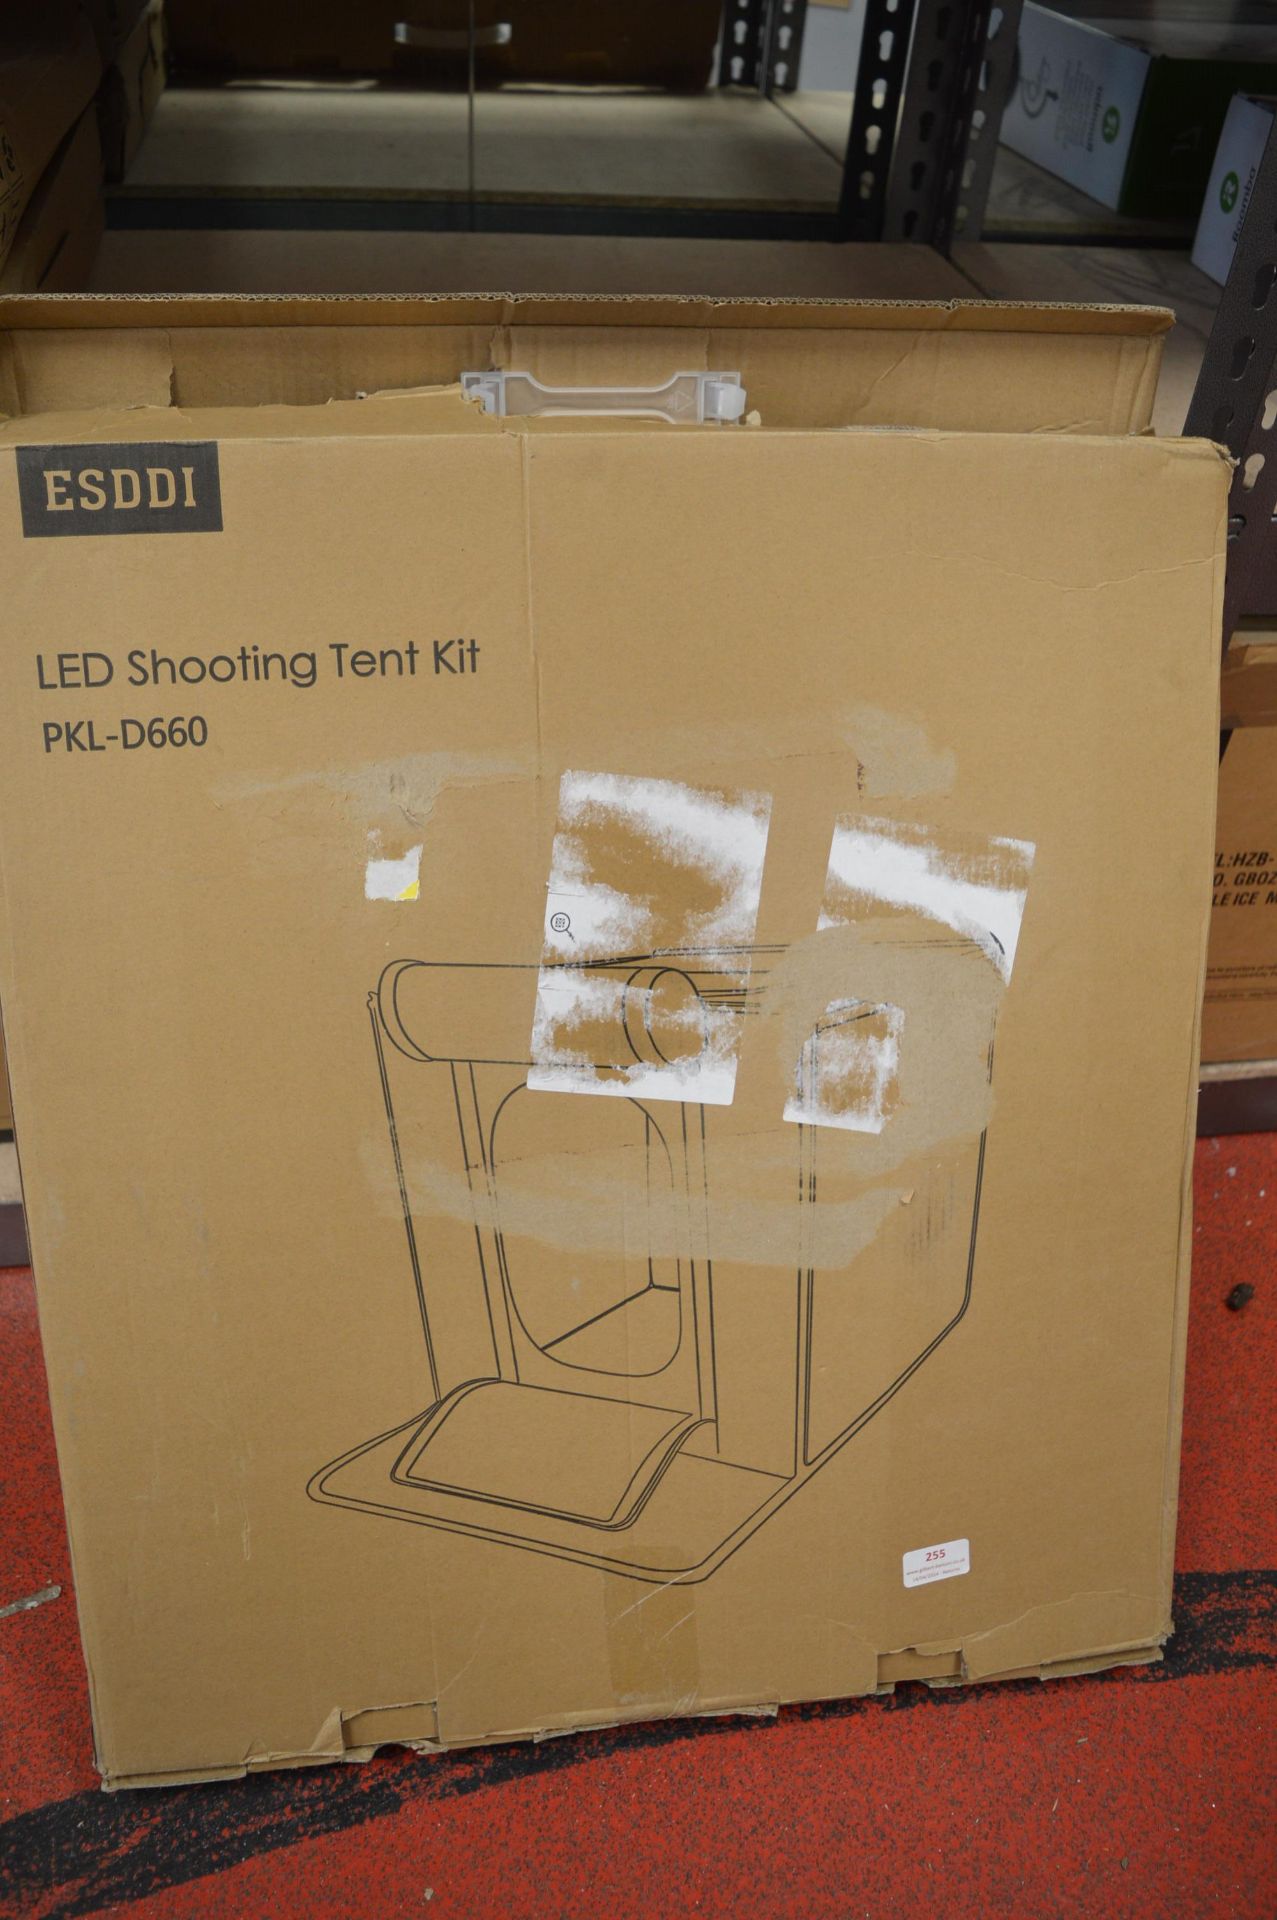 *LED Shooting Tent Kit